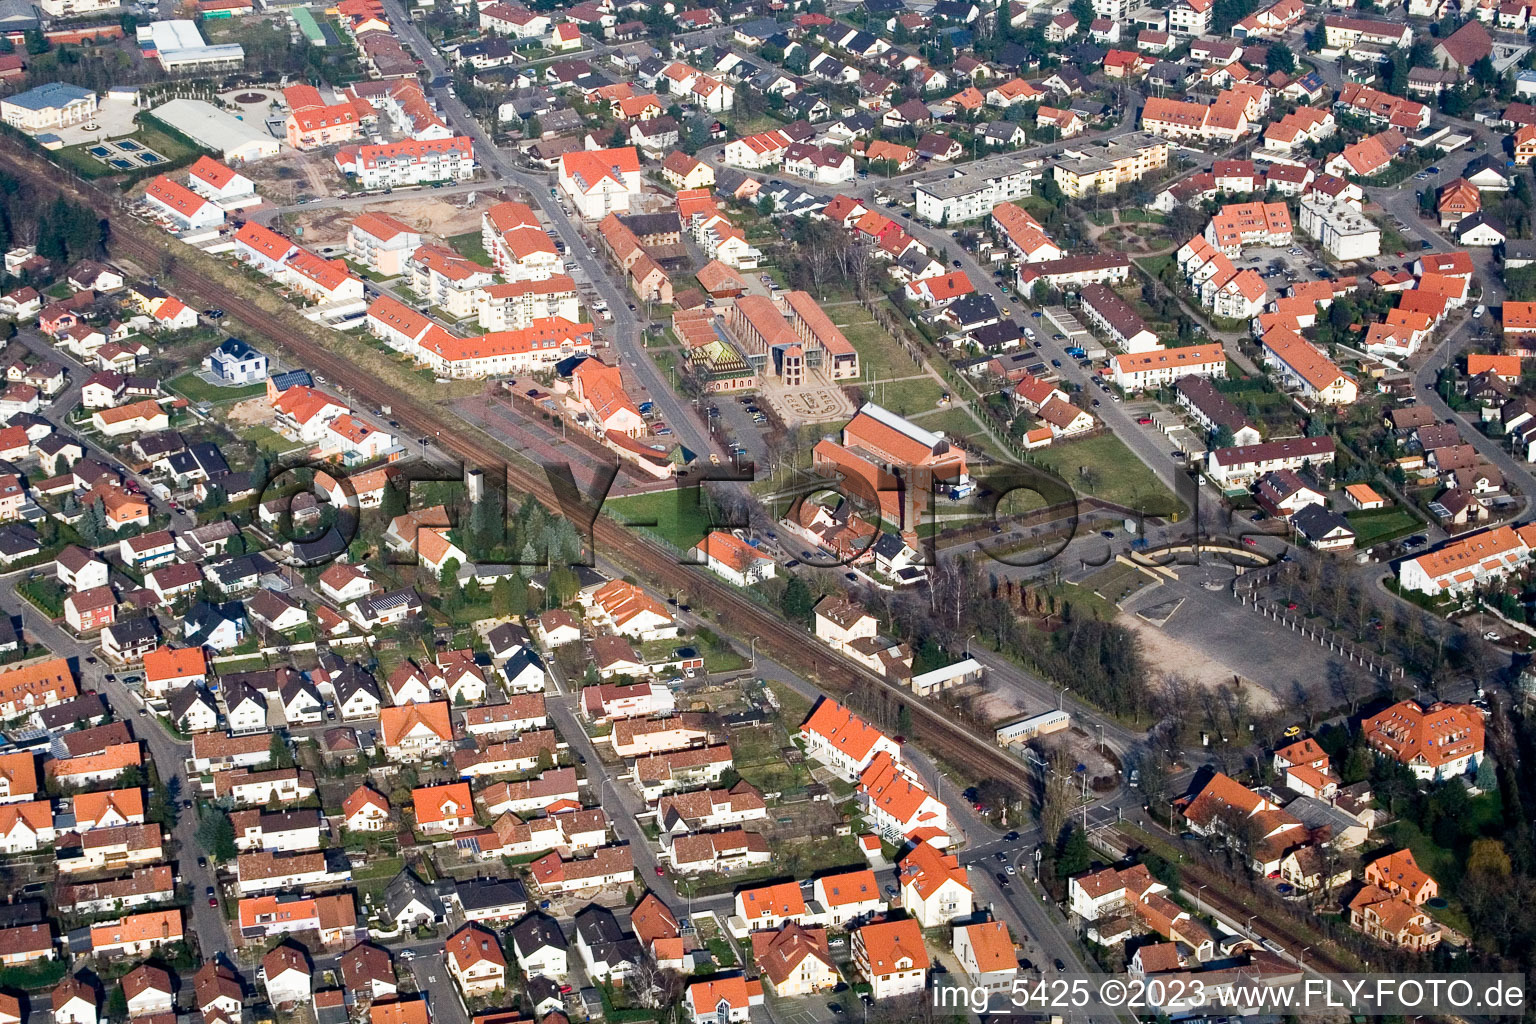 Vue aérienne de Musée de la Briqueterie, salle des fêtes du sud-ouest à Jockgrim dans le département Rhénanie-Palatinat, Allemagne